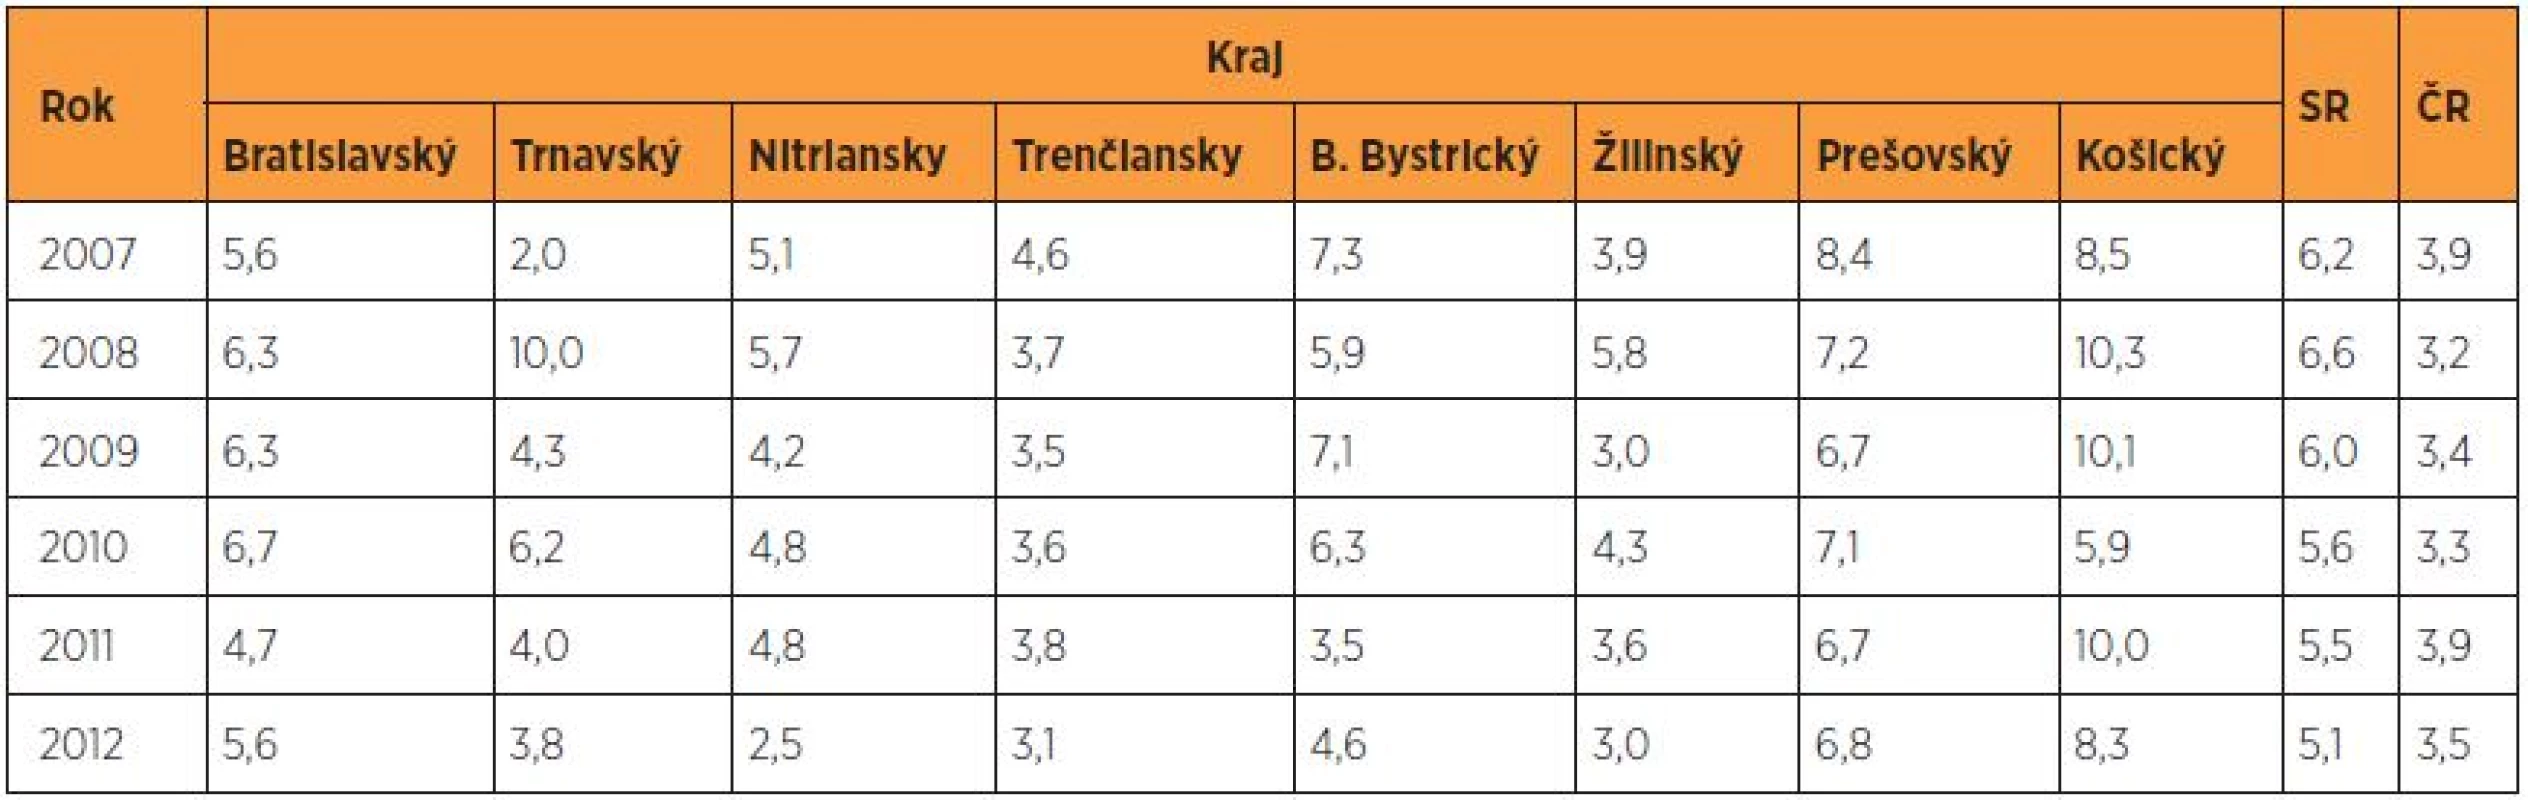 Perinatálna mortalita (‰) v rokoch 2007–2012 podľa krajov v SR – porovnanie s ČR